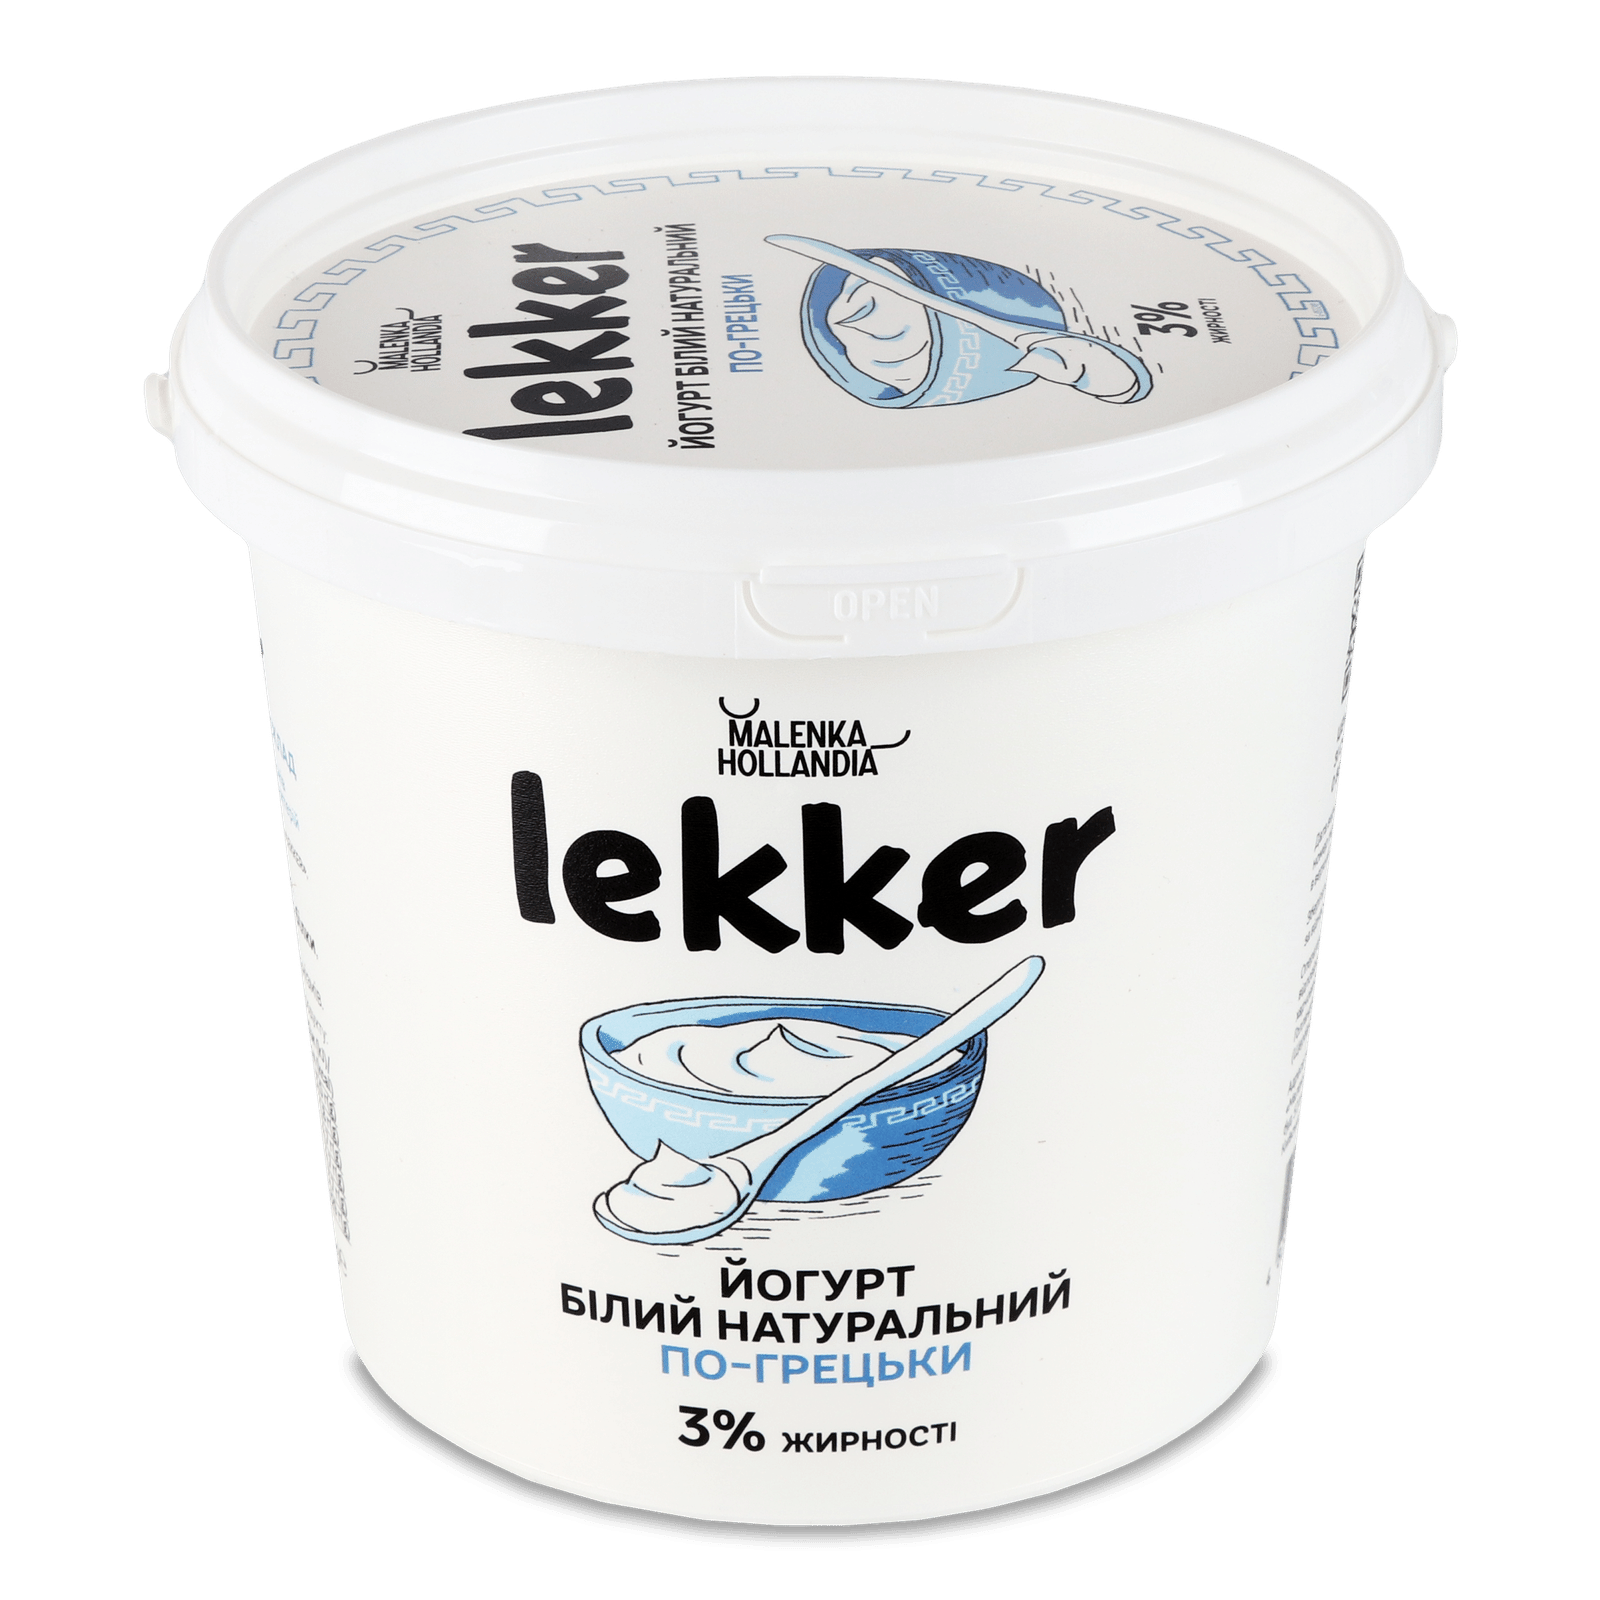 Йогурт Lekker по-грецьки білий натуральний 3% - 1